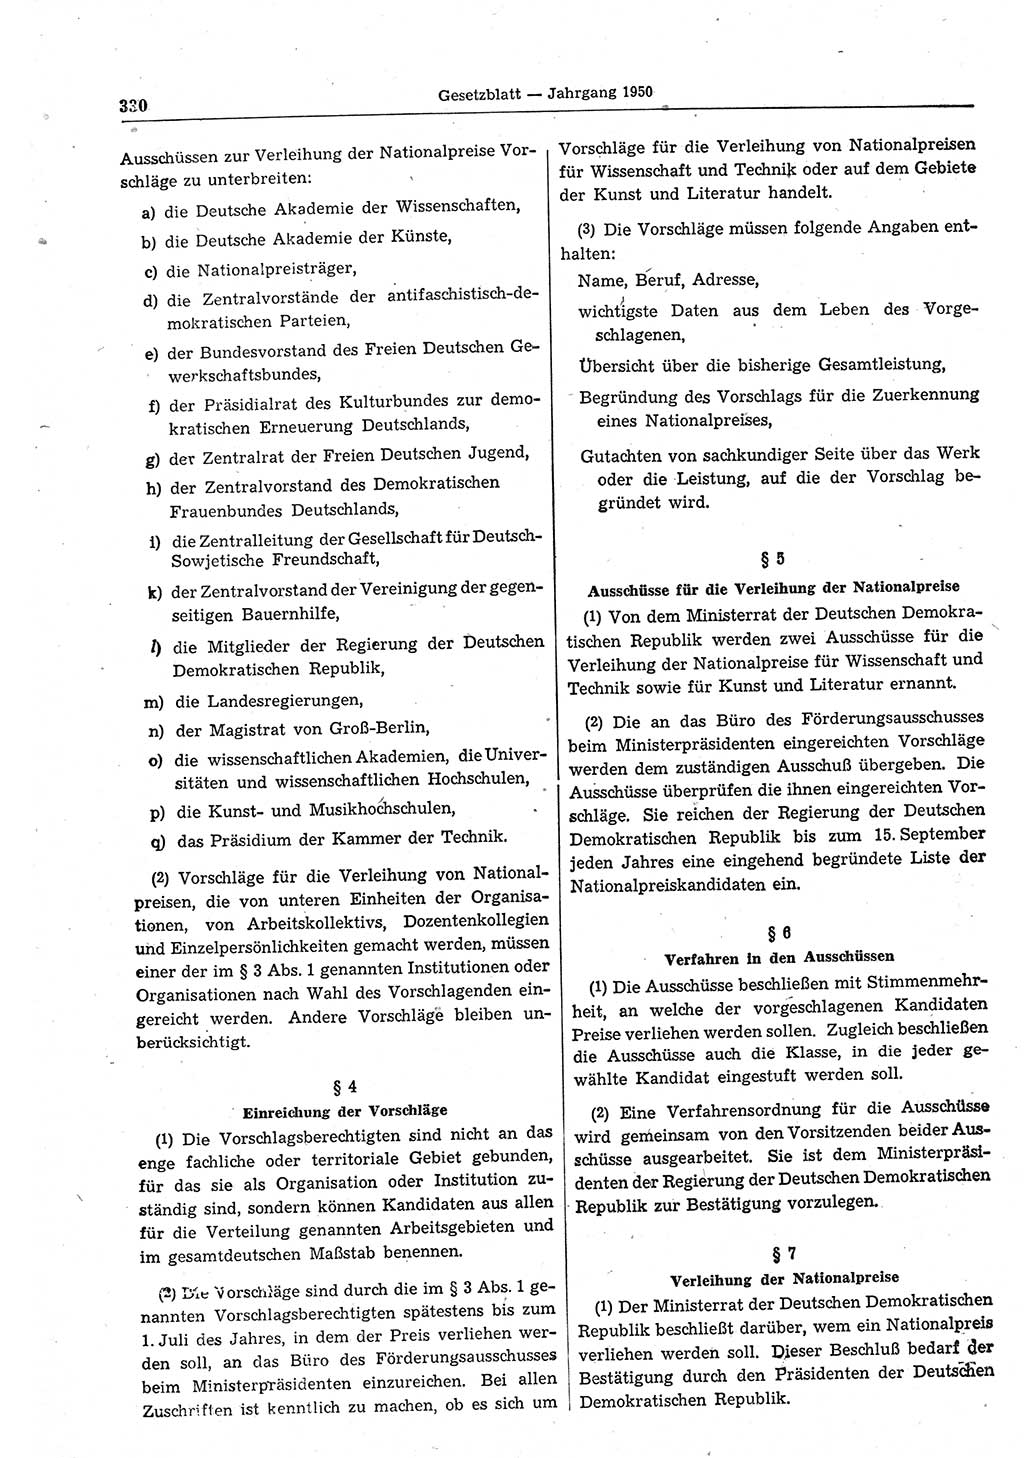 Gesetzblatt (GBl.) der Deutschen Demokratischen Republik (DDR) 1950, Seite 330 (GBl. DDR 1950, S. 330)